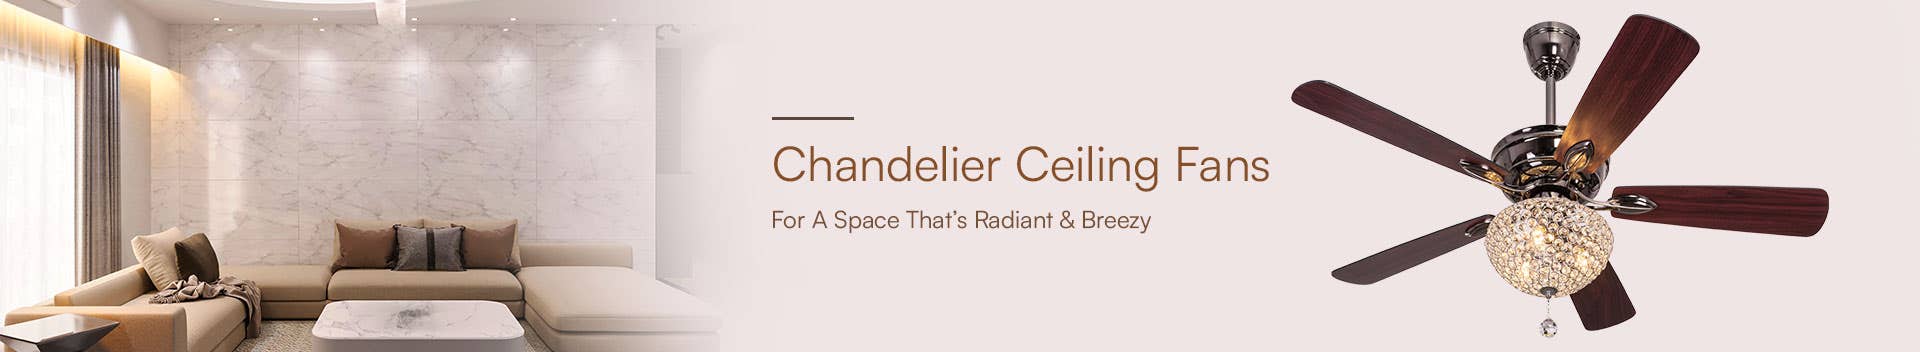 Chandelier Ceiling Fans